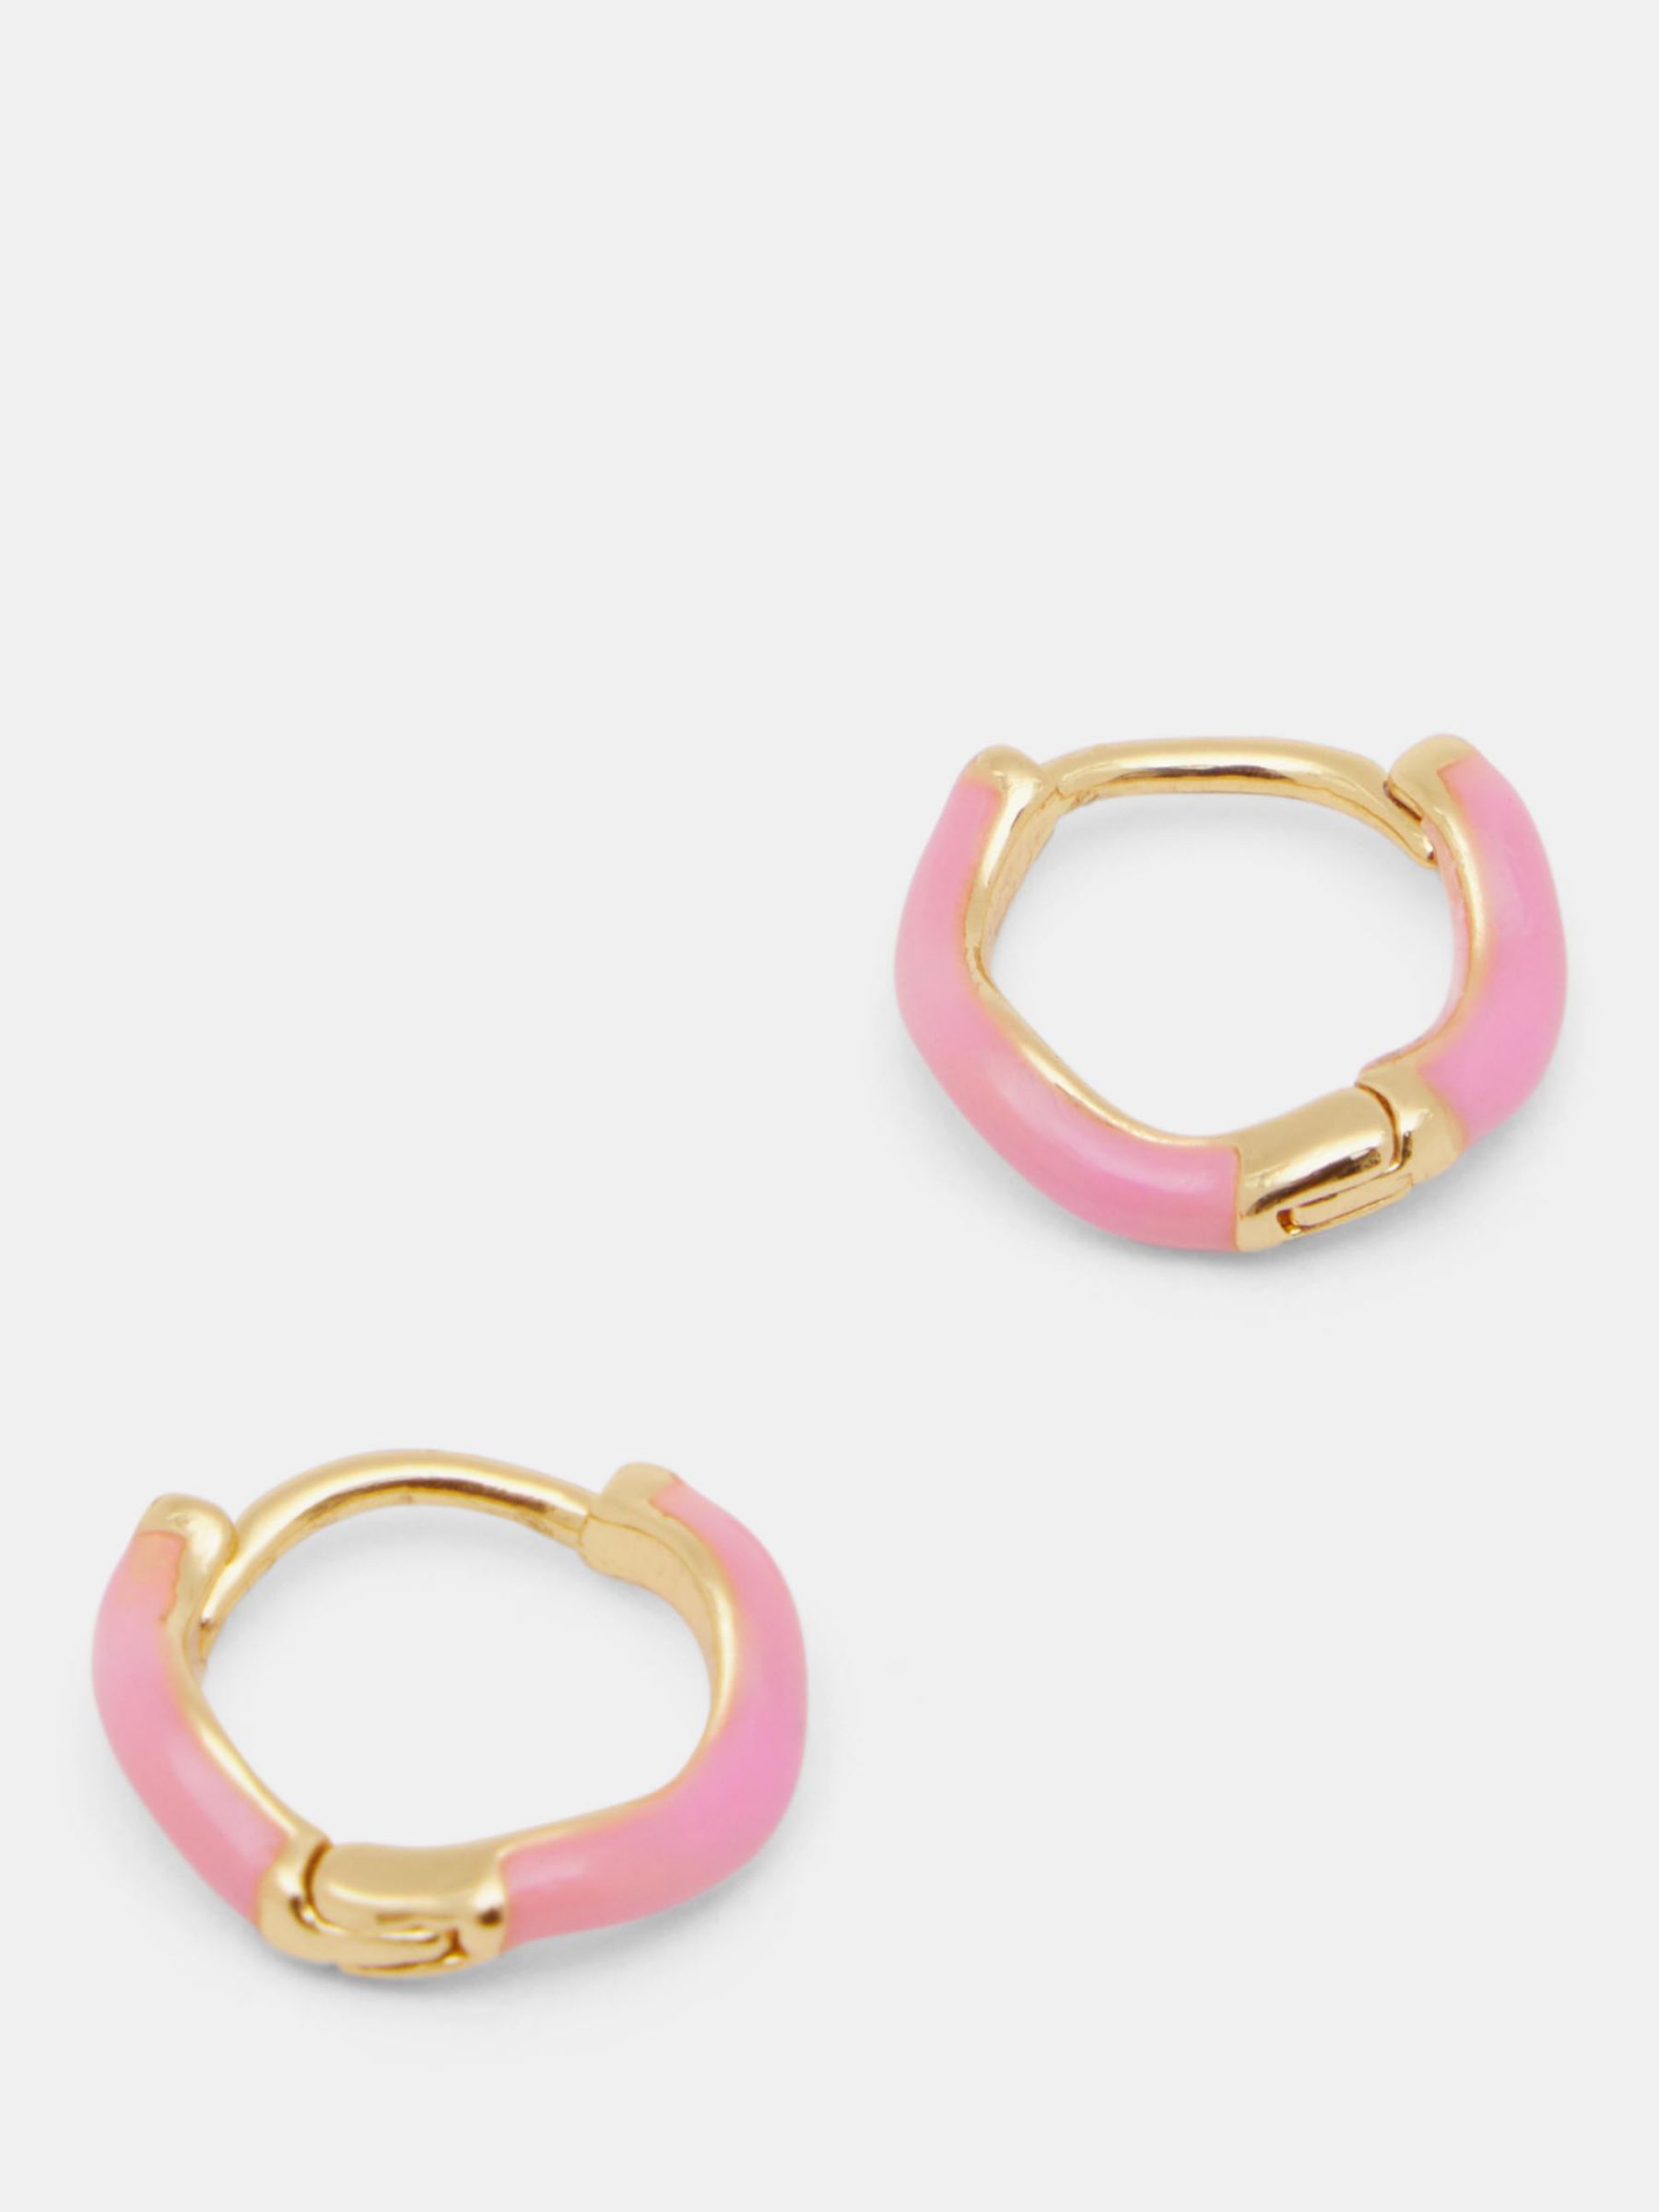 HUSH Fern Twist Enamel Hoop Earrings, Pink, One Size